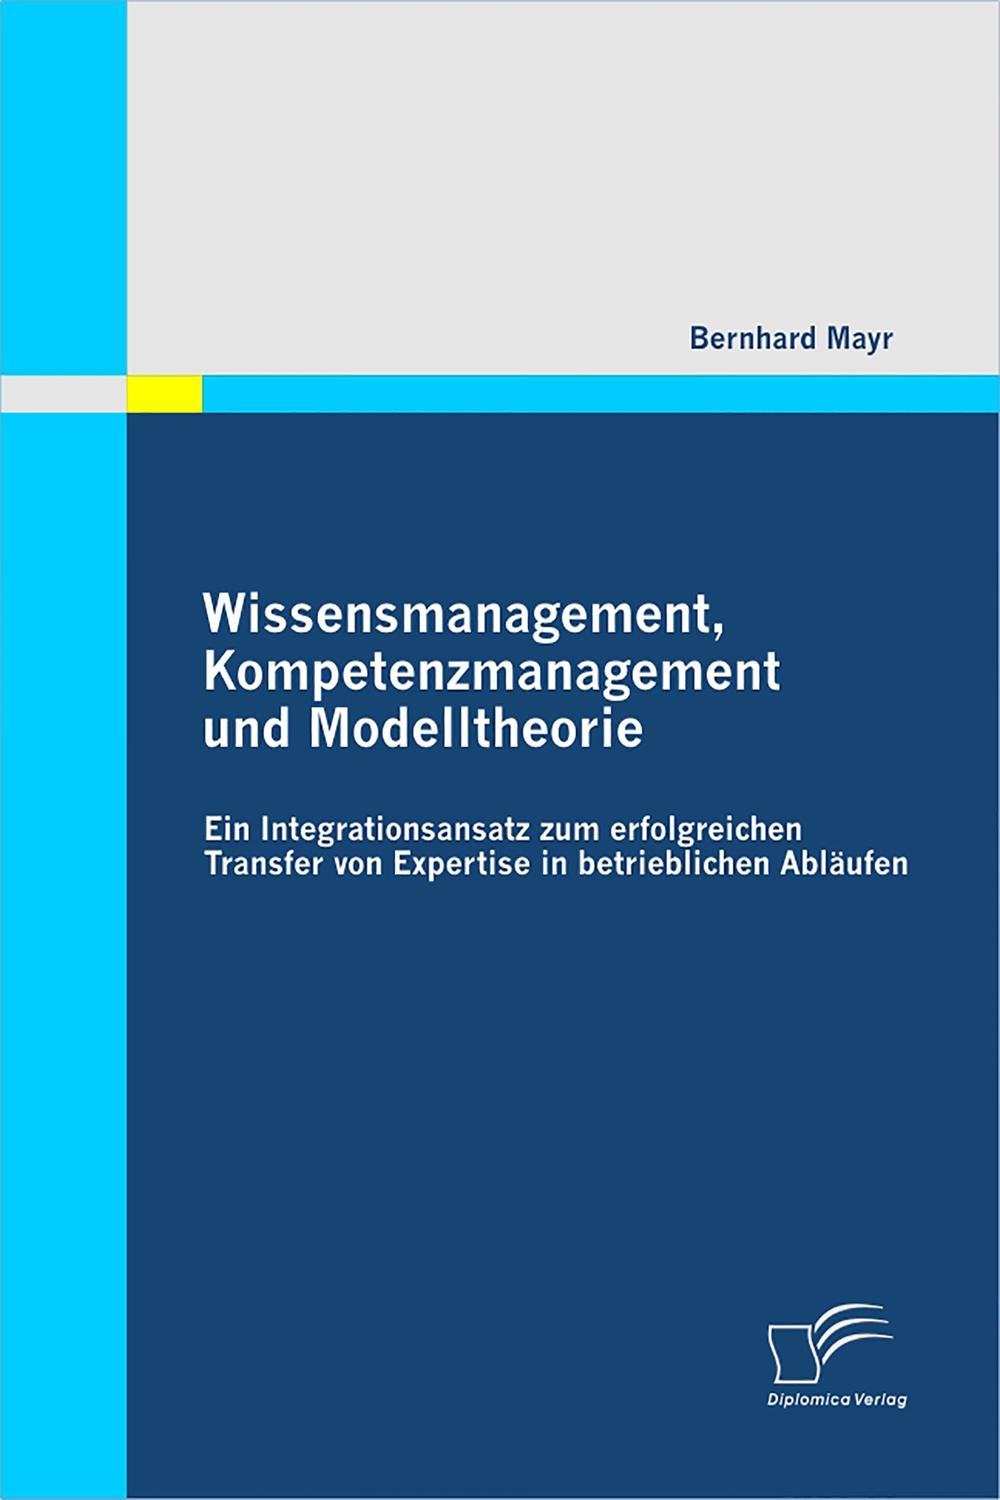 Wissensmanagement, Kompetenzmanagement und Modelltheorie - Bernhard Mayr